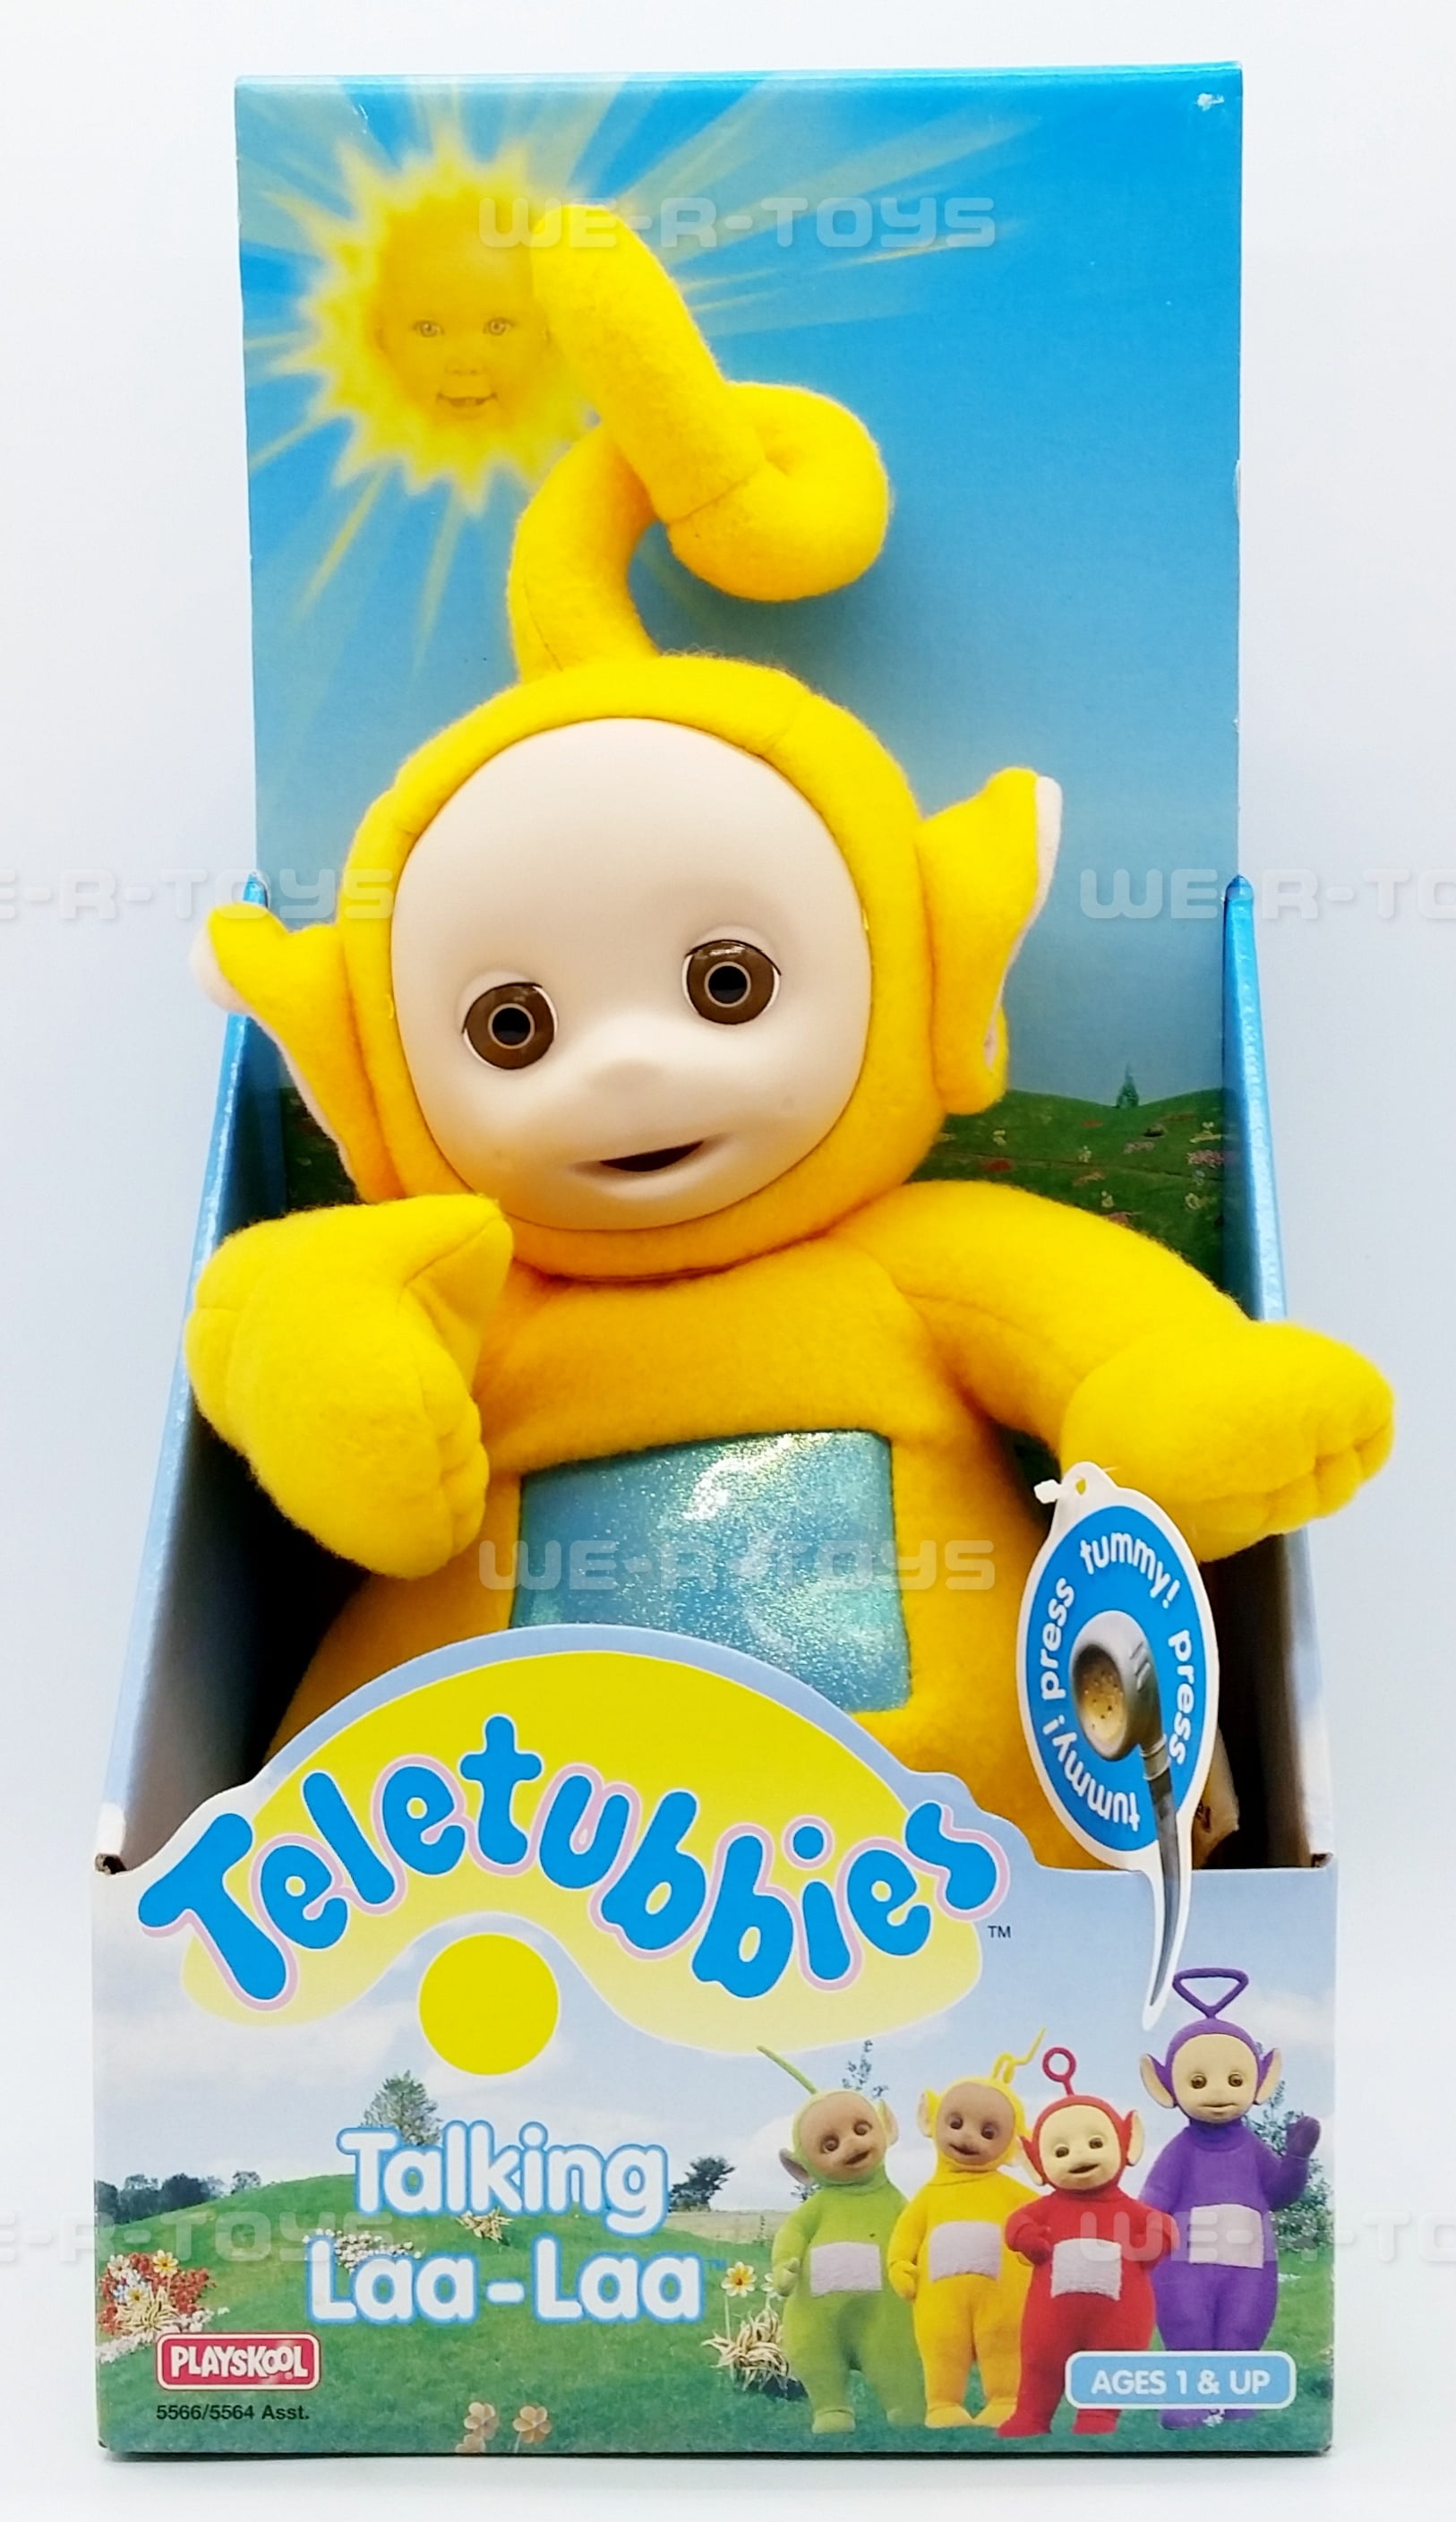  Teletubbies 8 Try Me Talking Plush - Laa Laa : Toys